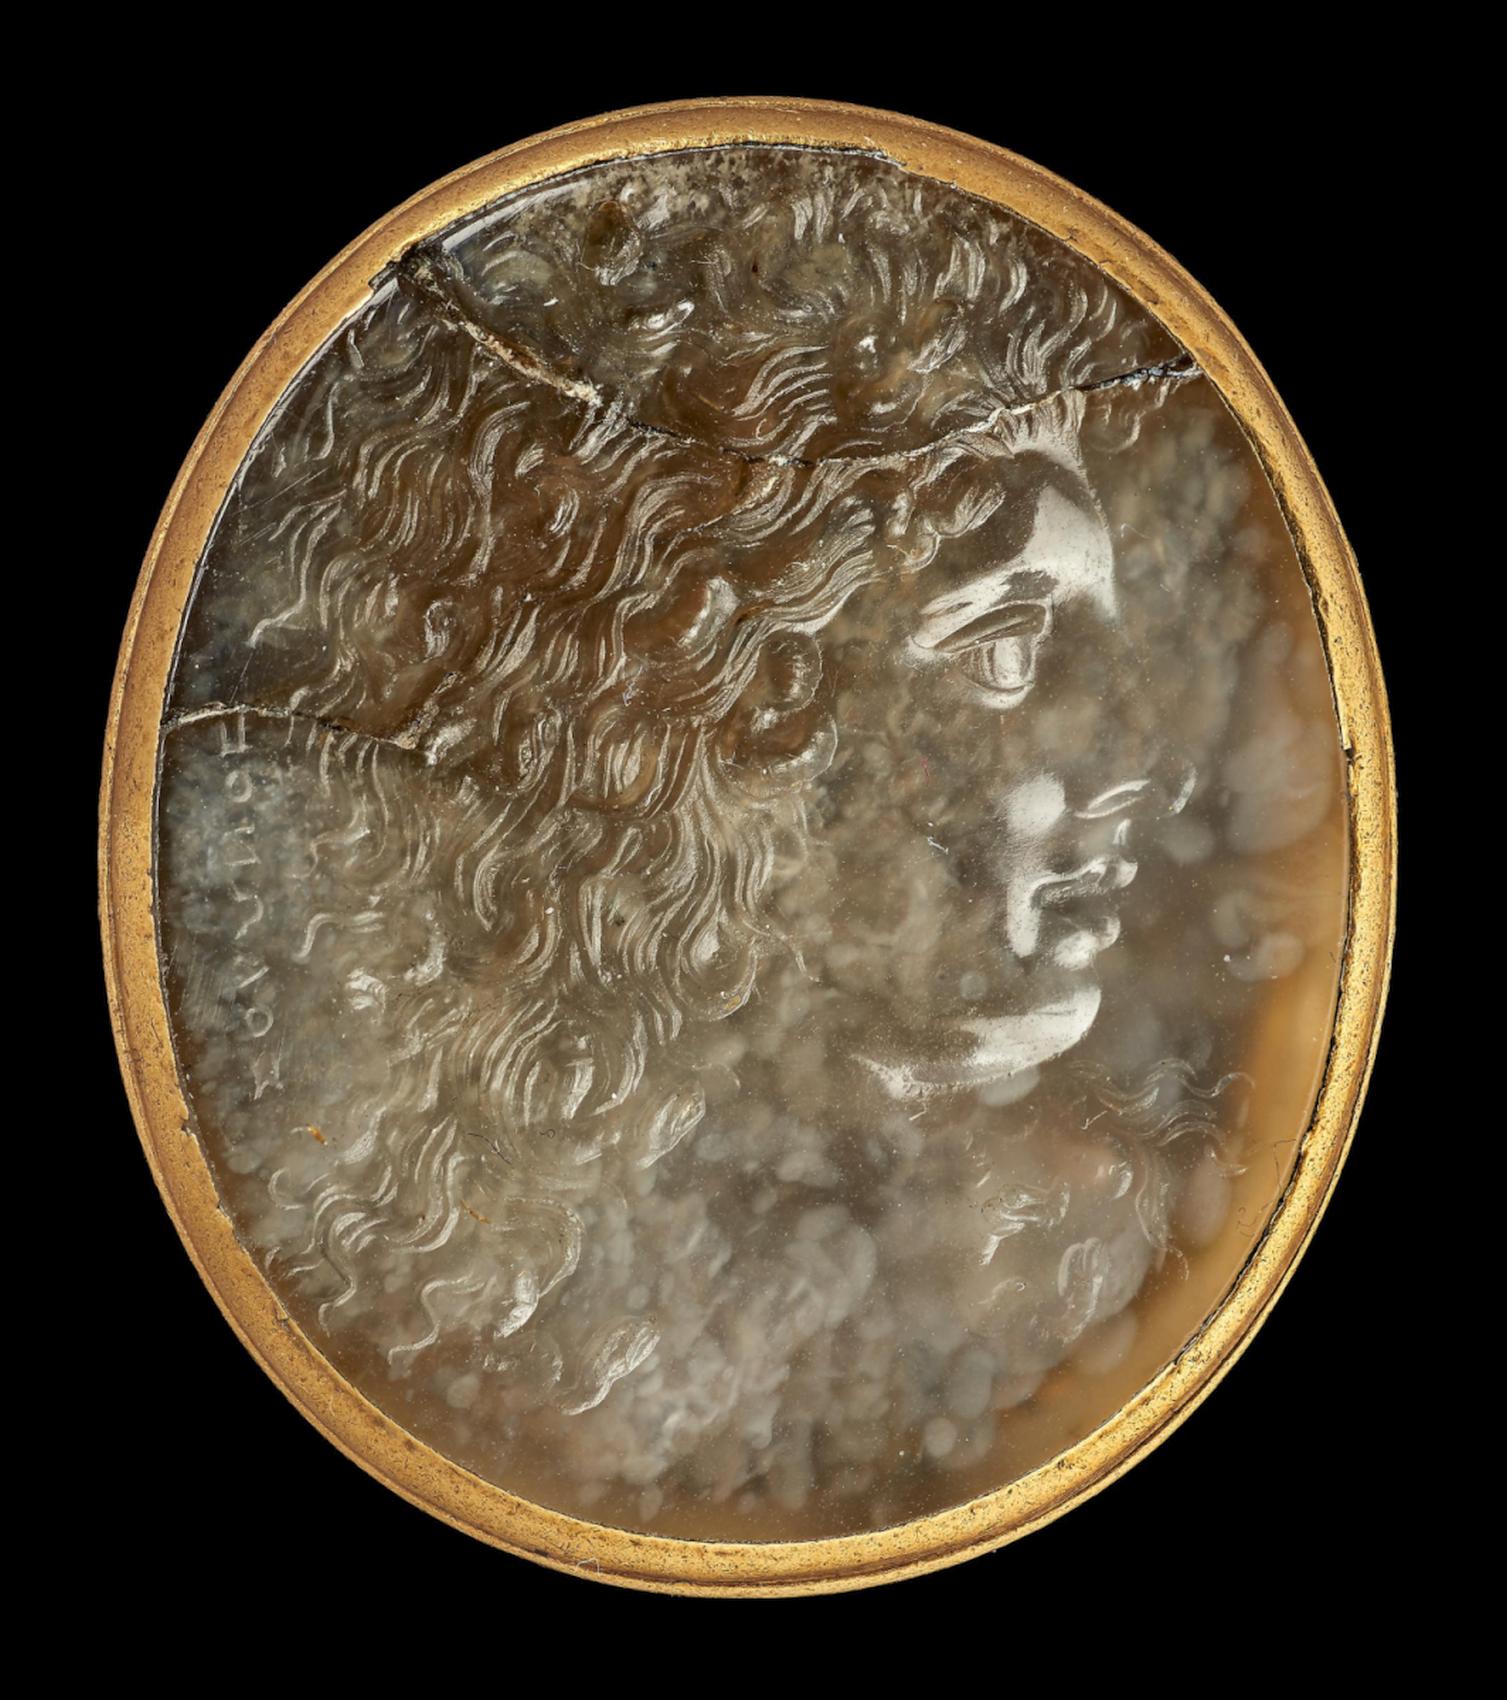 Medusa Strozzi - original chalceodny gem by Solon